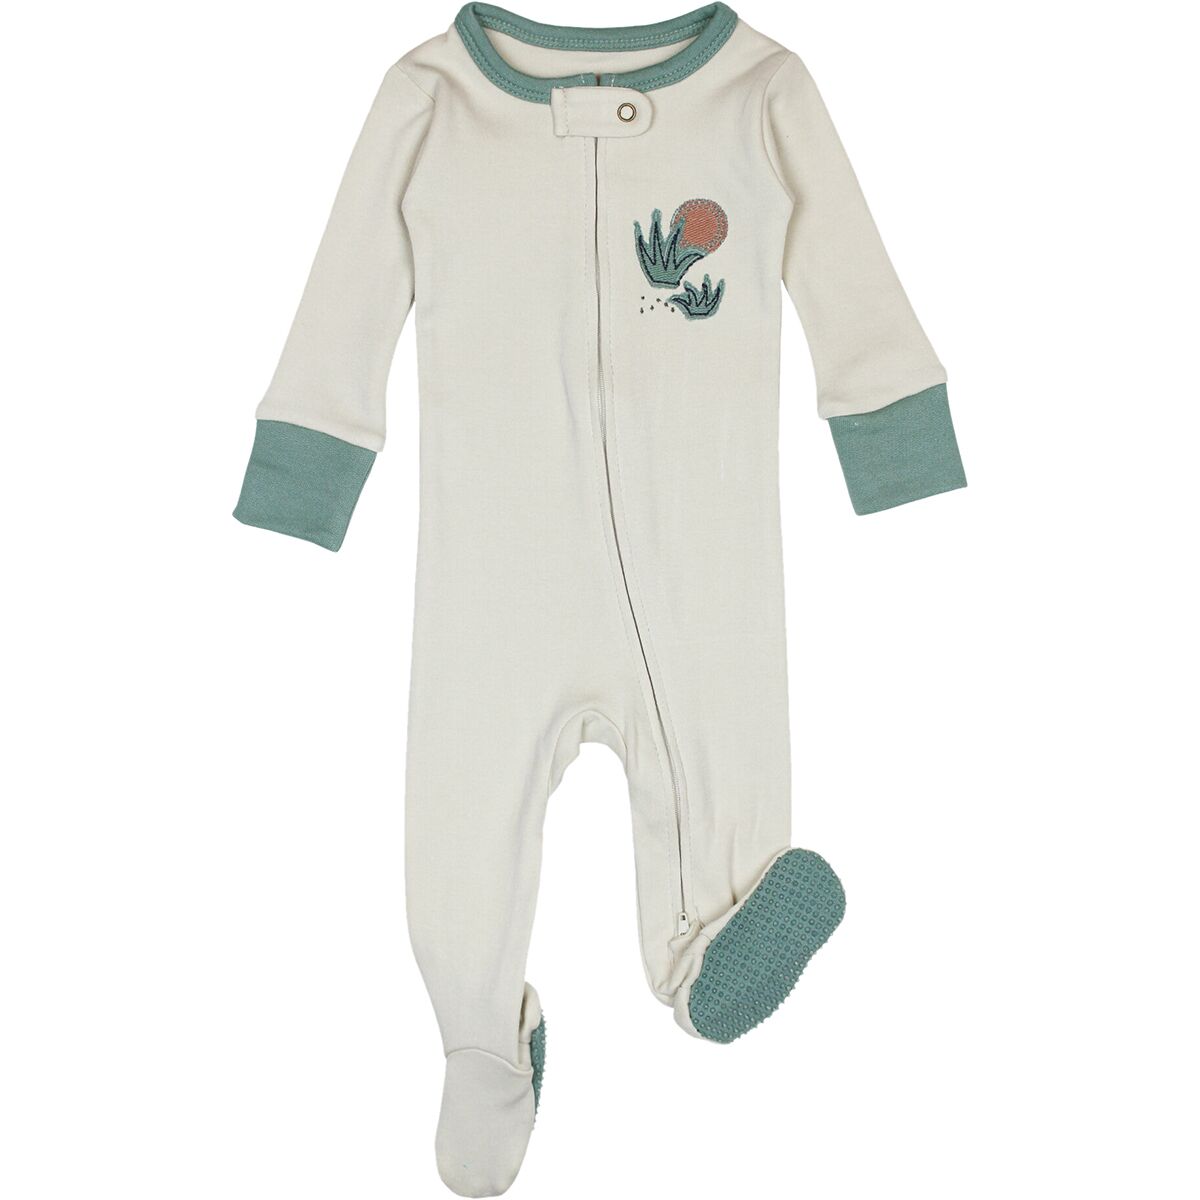 L'oved Baby Applique Zipper Footie Bodysuit - Infants'